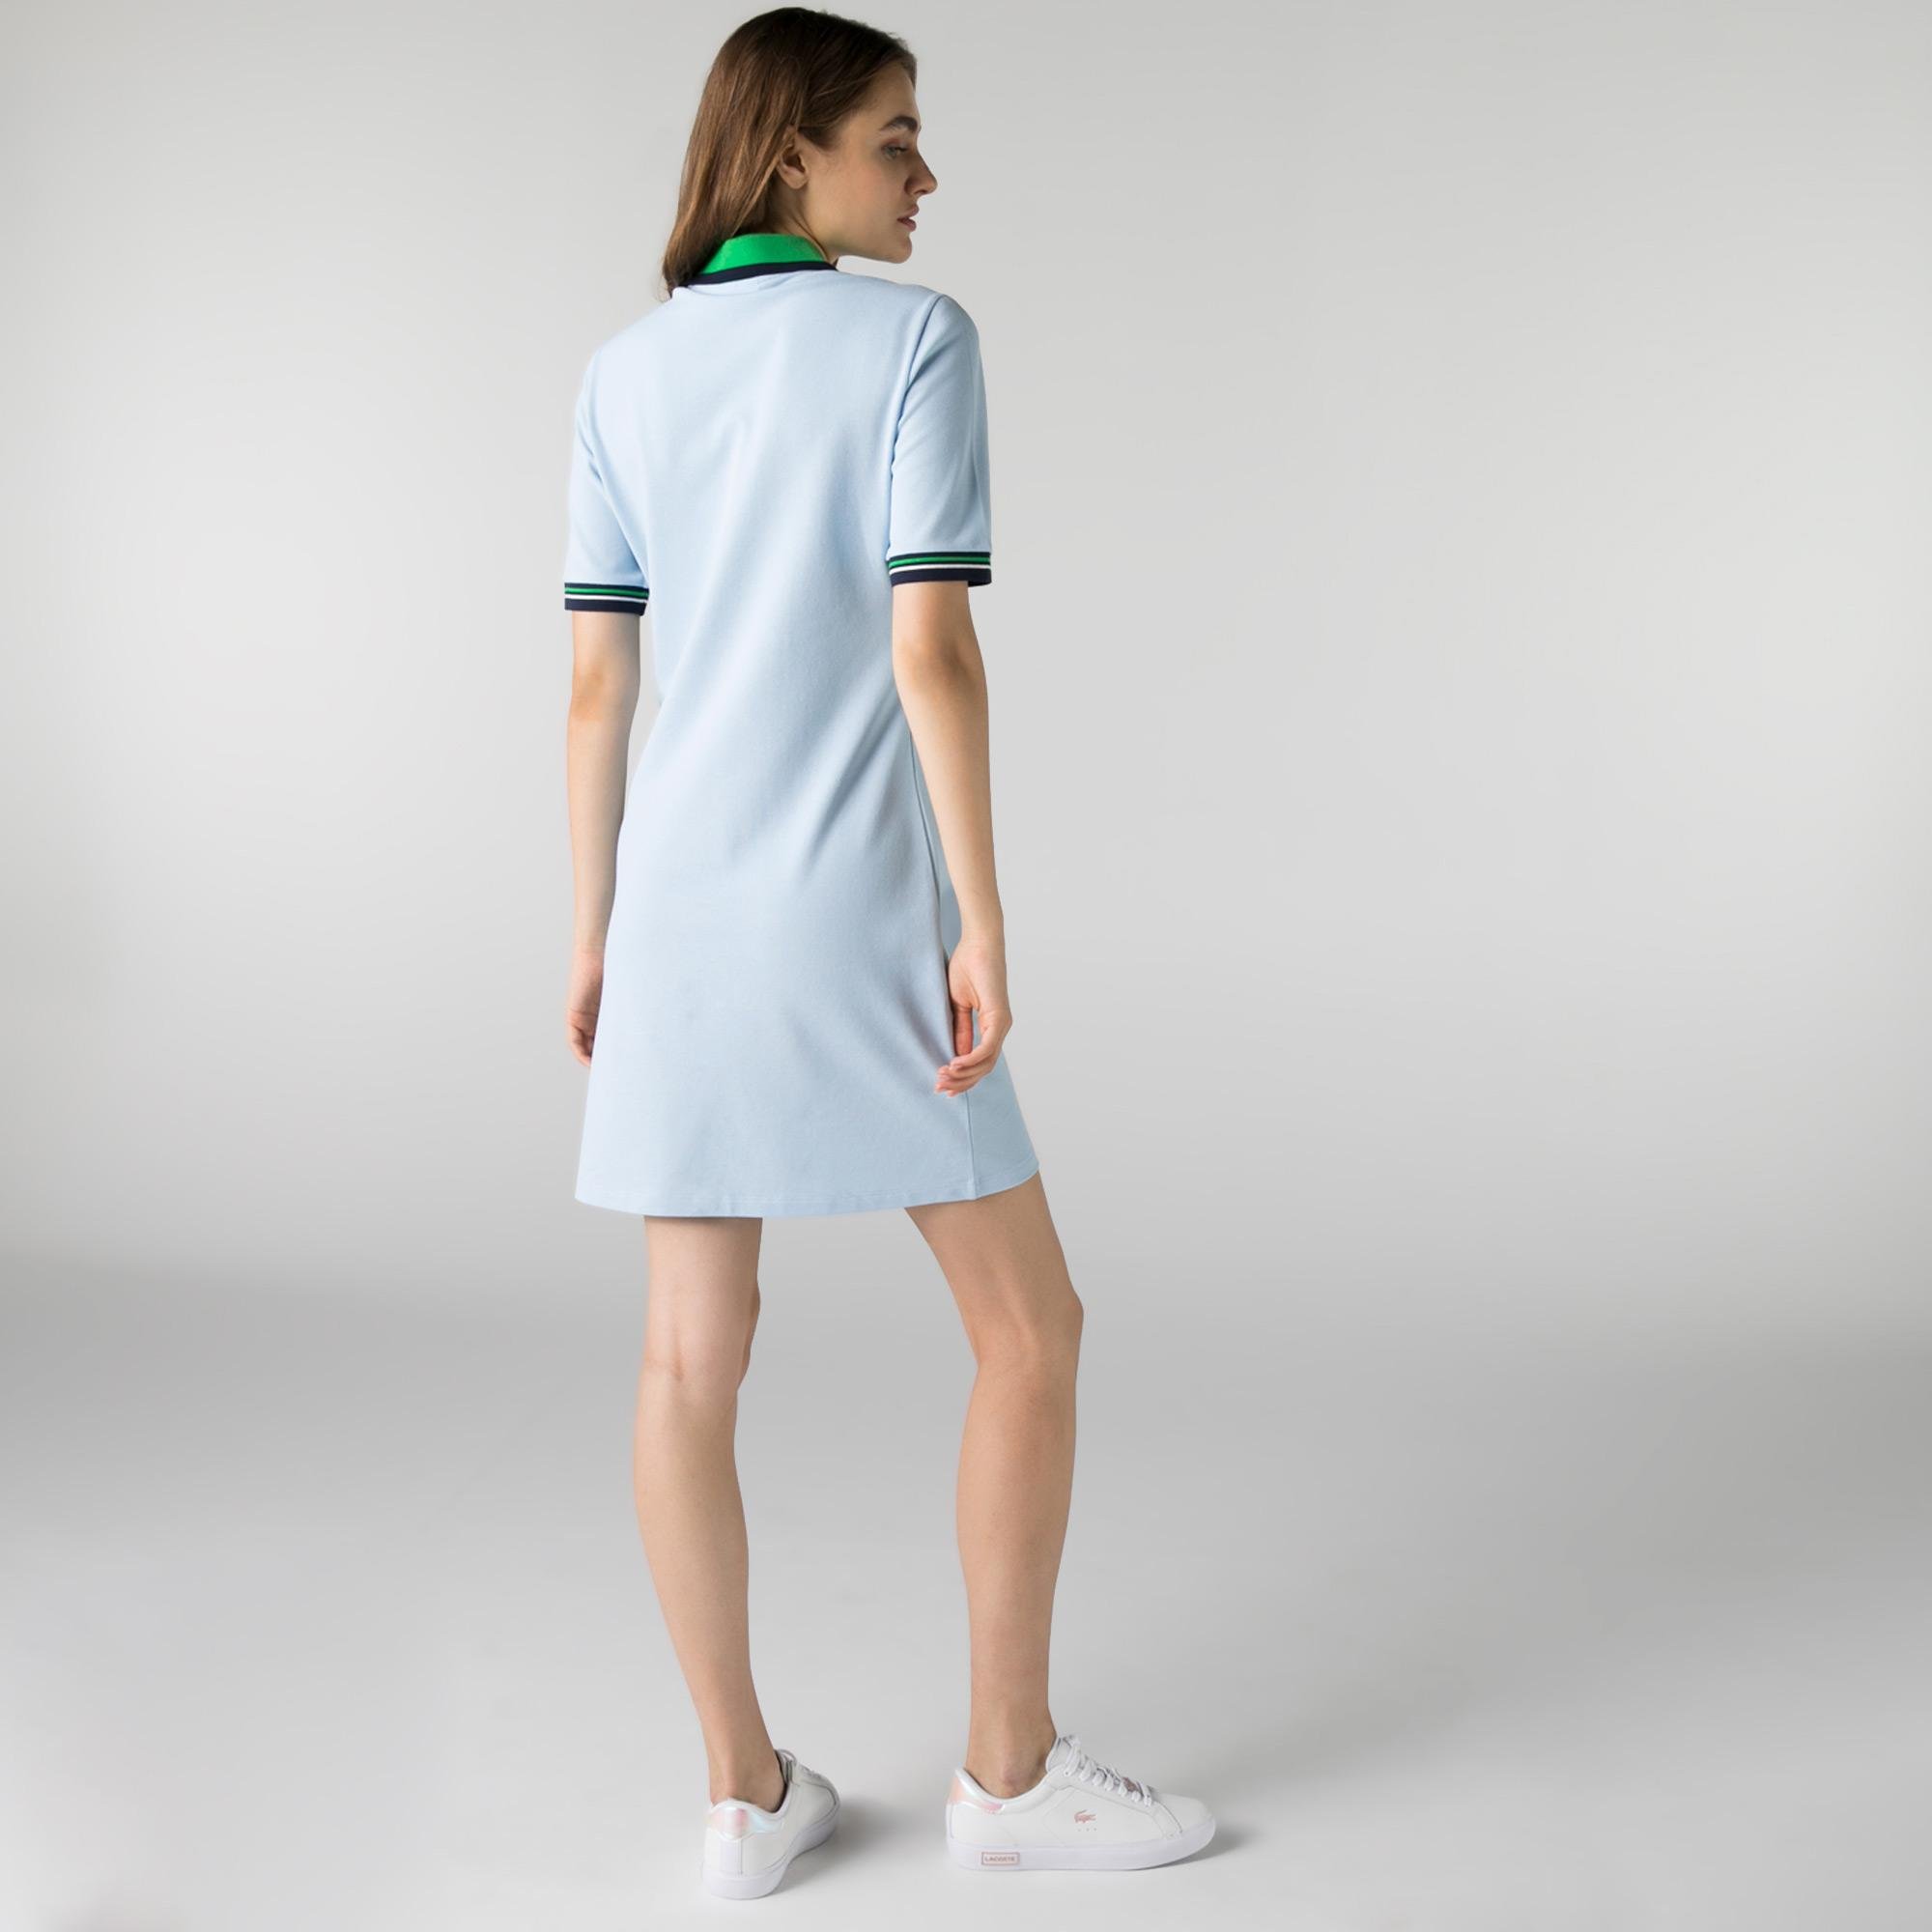 Lacoste Kadın Kısa Kollu Polo Yaka Slim Fit Mavi Elbise